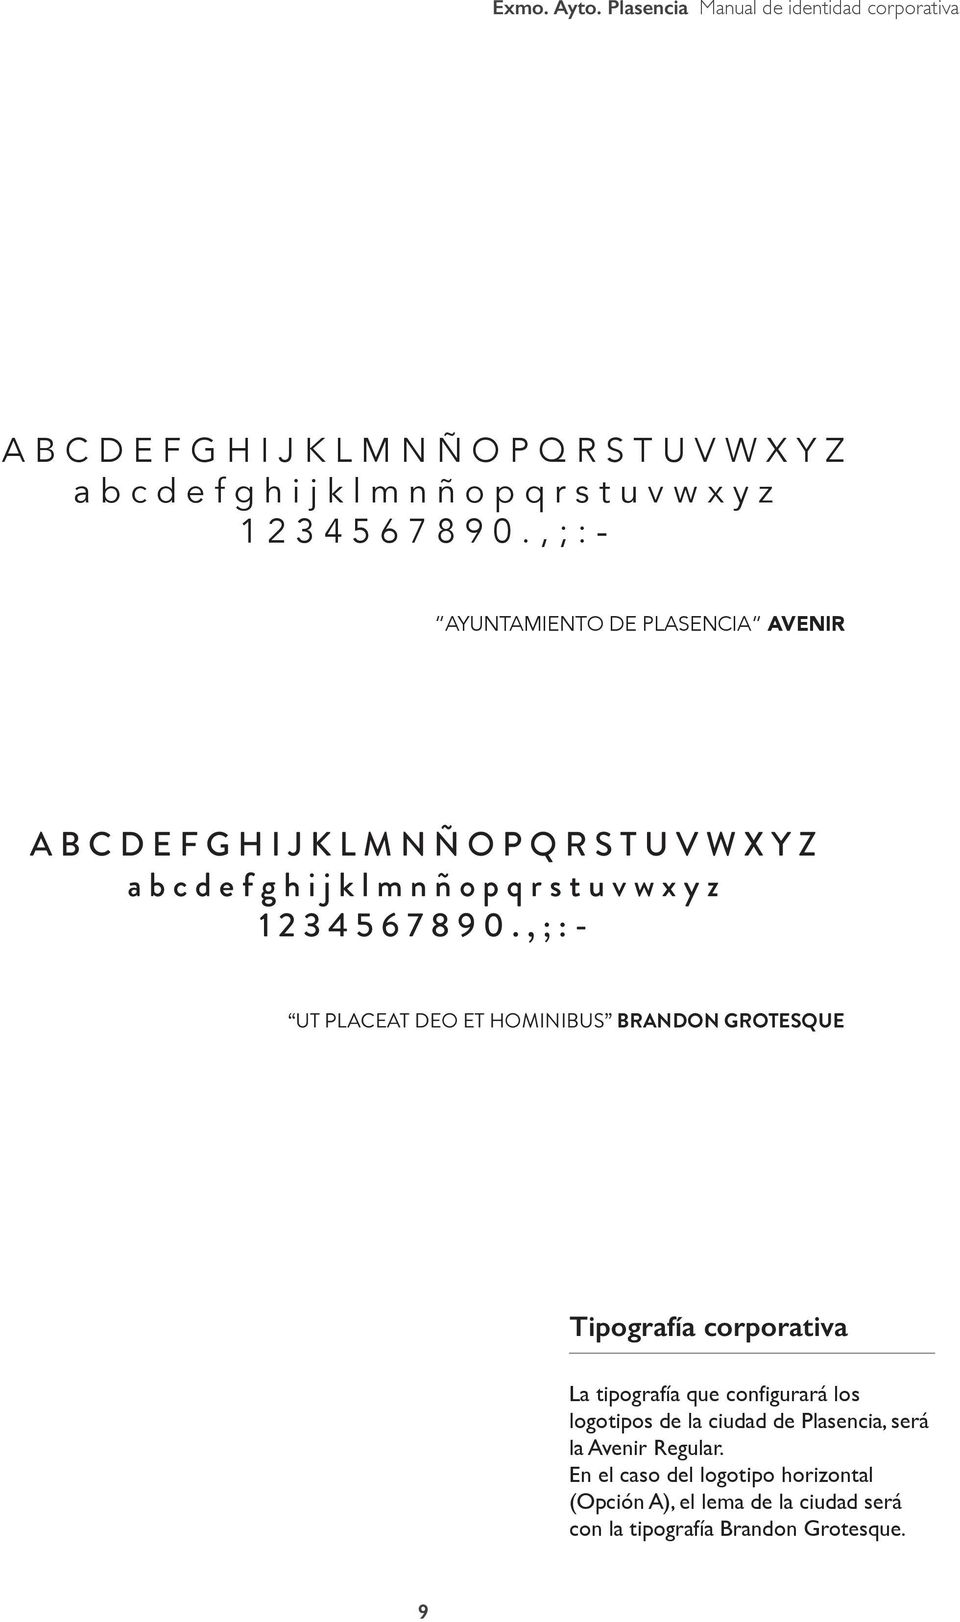 tipografía que configurará los logotipos de la ciudad de Plasencia, será la Avenir Regular.